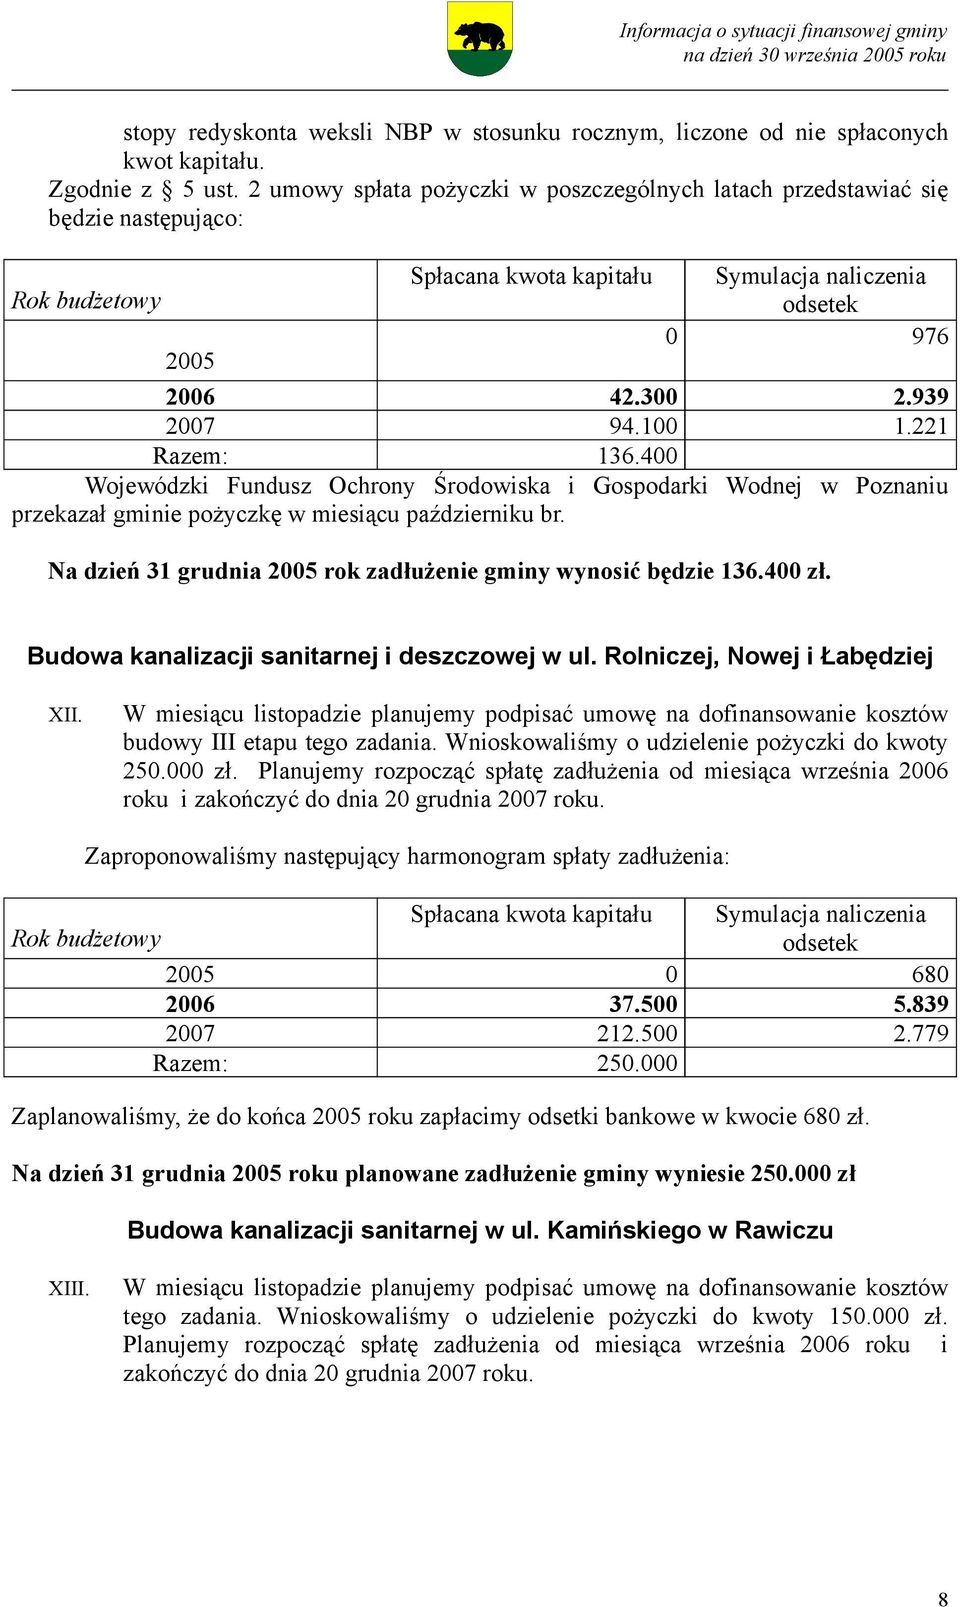 400 Wojewódzki Fundusz Ochrony Środowiska i Gospodarki Wodnej w Poznaniu przekazał gminie pożyczkę w miesiącu październiku br. Na dzień 31 grudnia 2005 rok zadłużenie gminy wynosić będzie 136.400 zł.